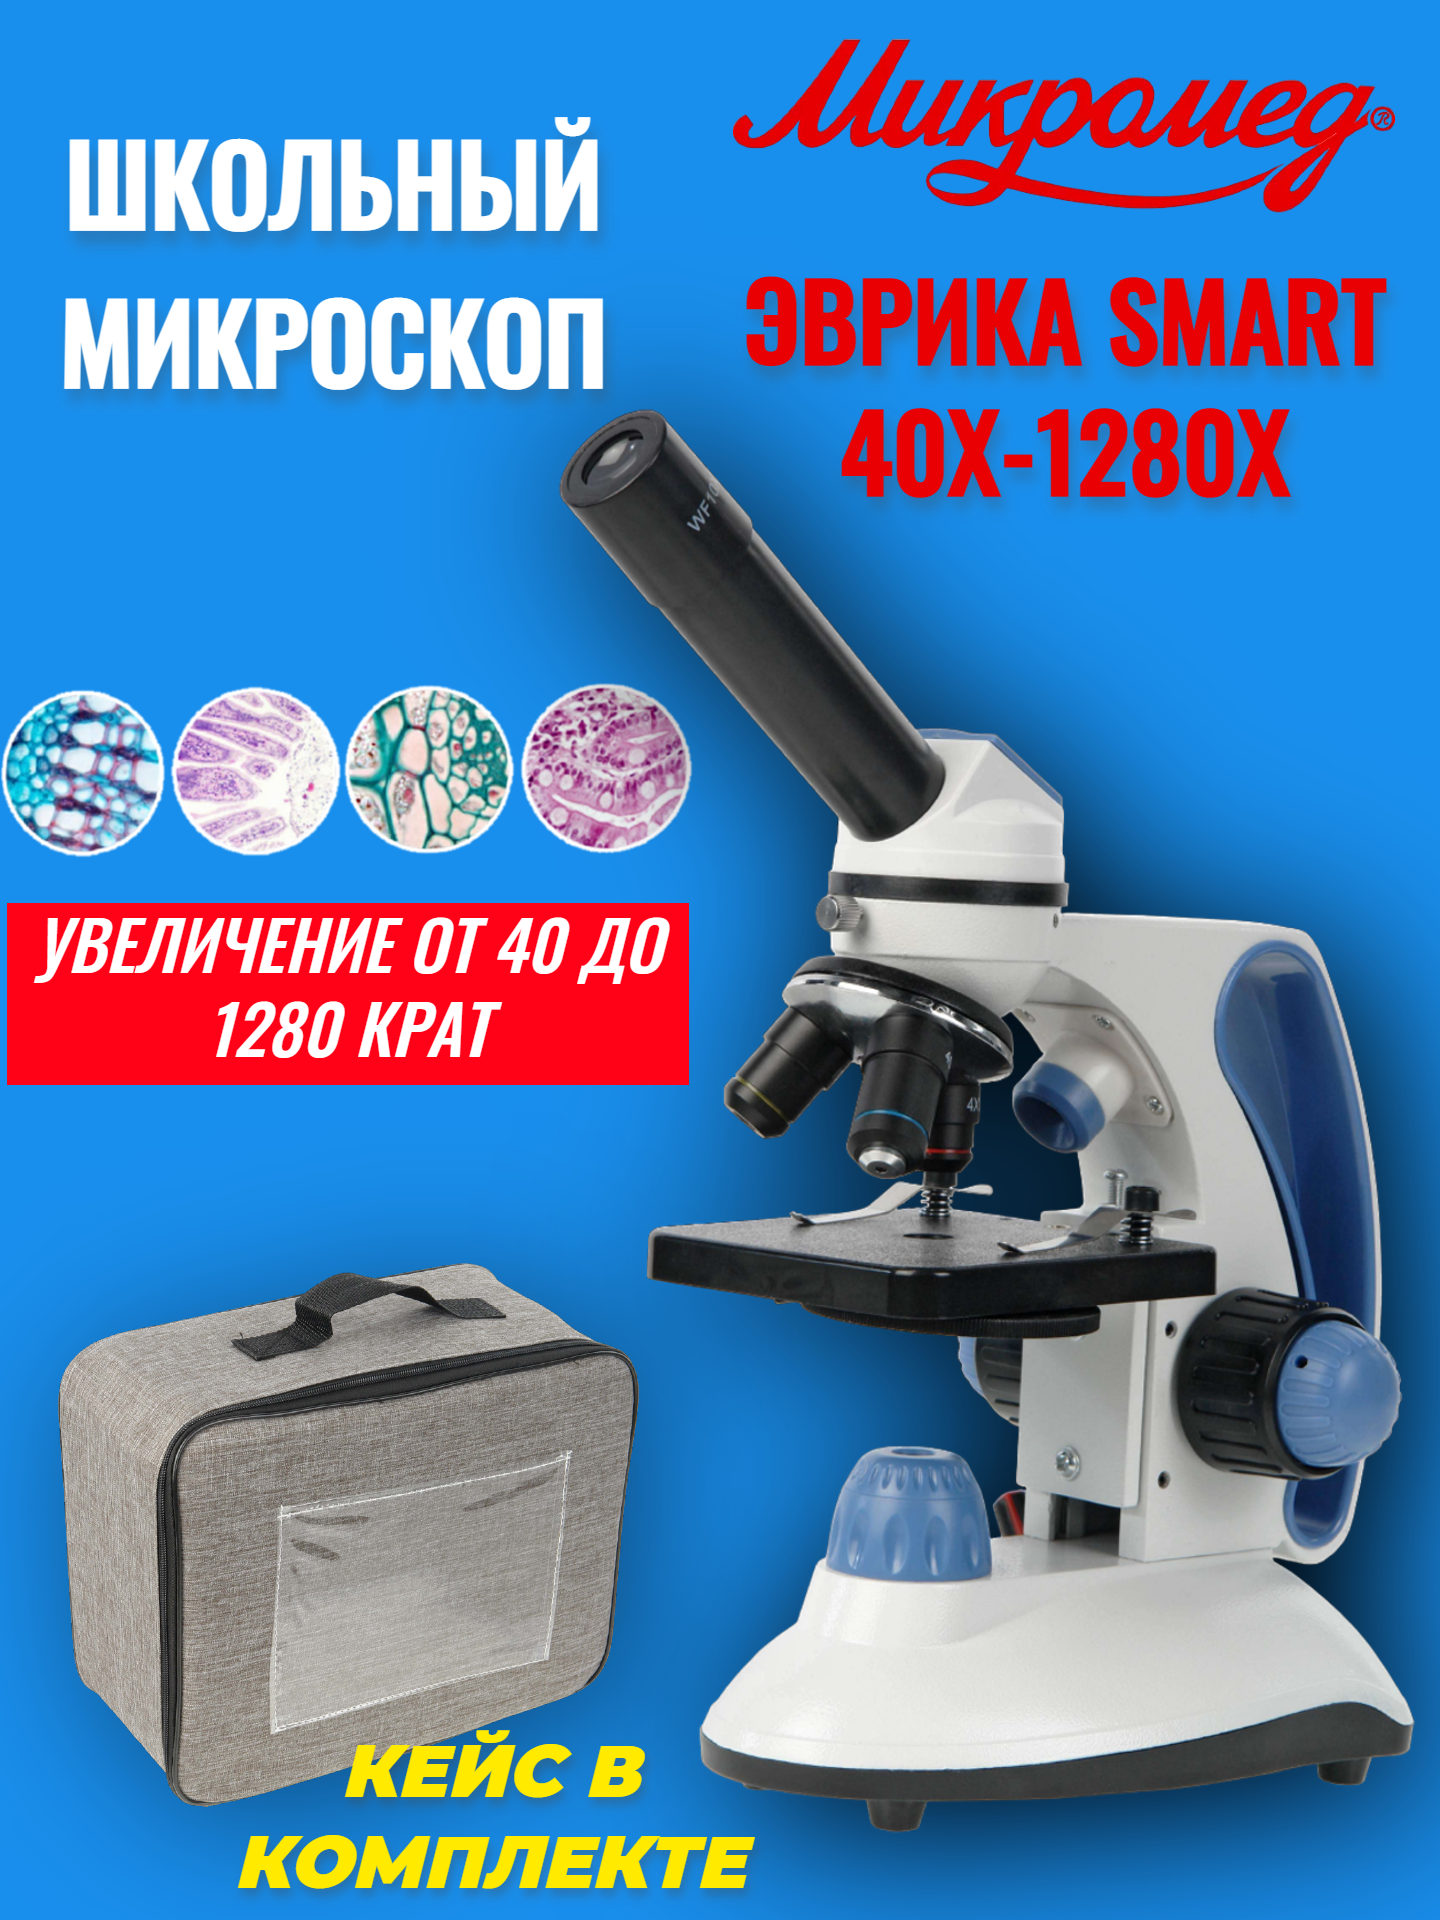 Микроскоп школьный учебный Микромед Эврика SMART 40х-1280х в текстильном кейсе учебный микроскоп celestron в кейсе